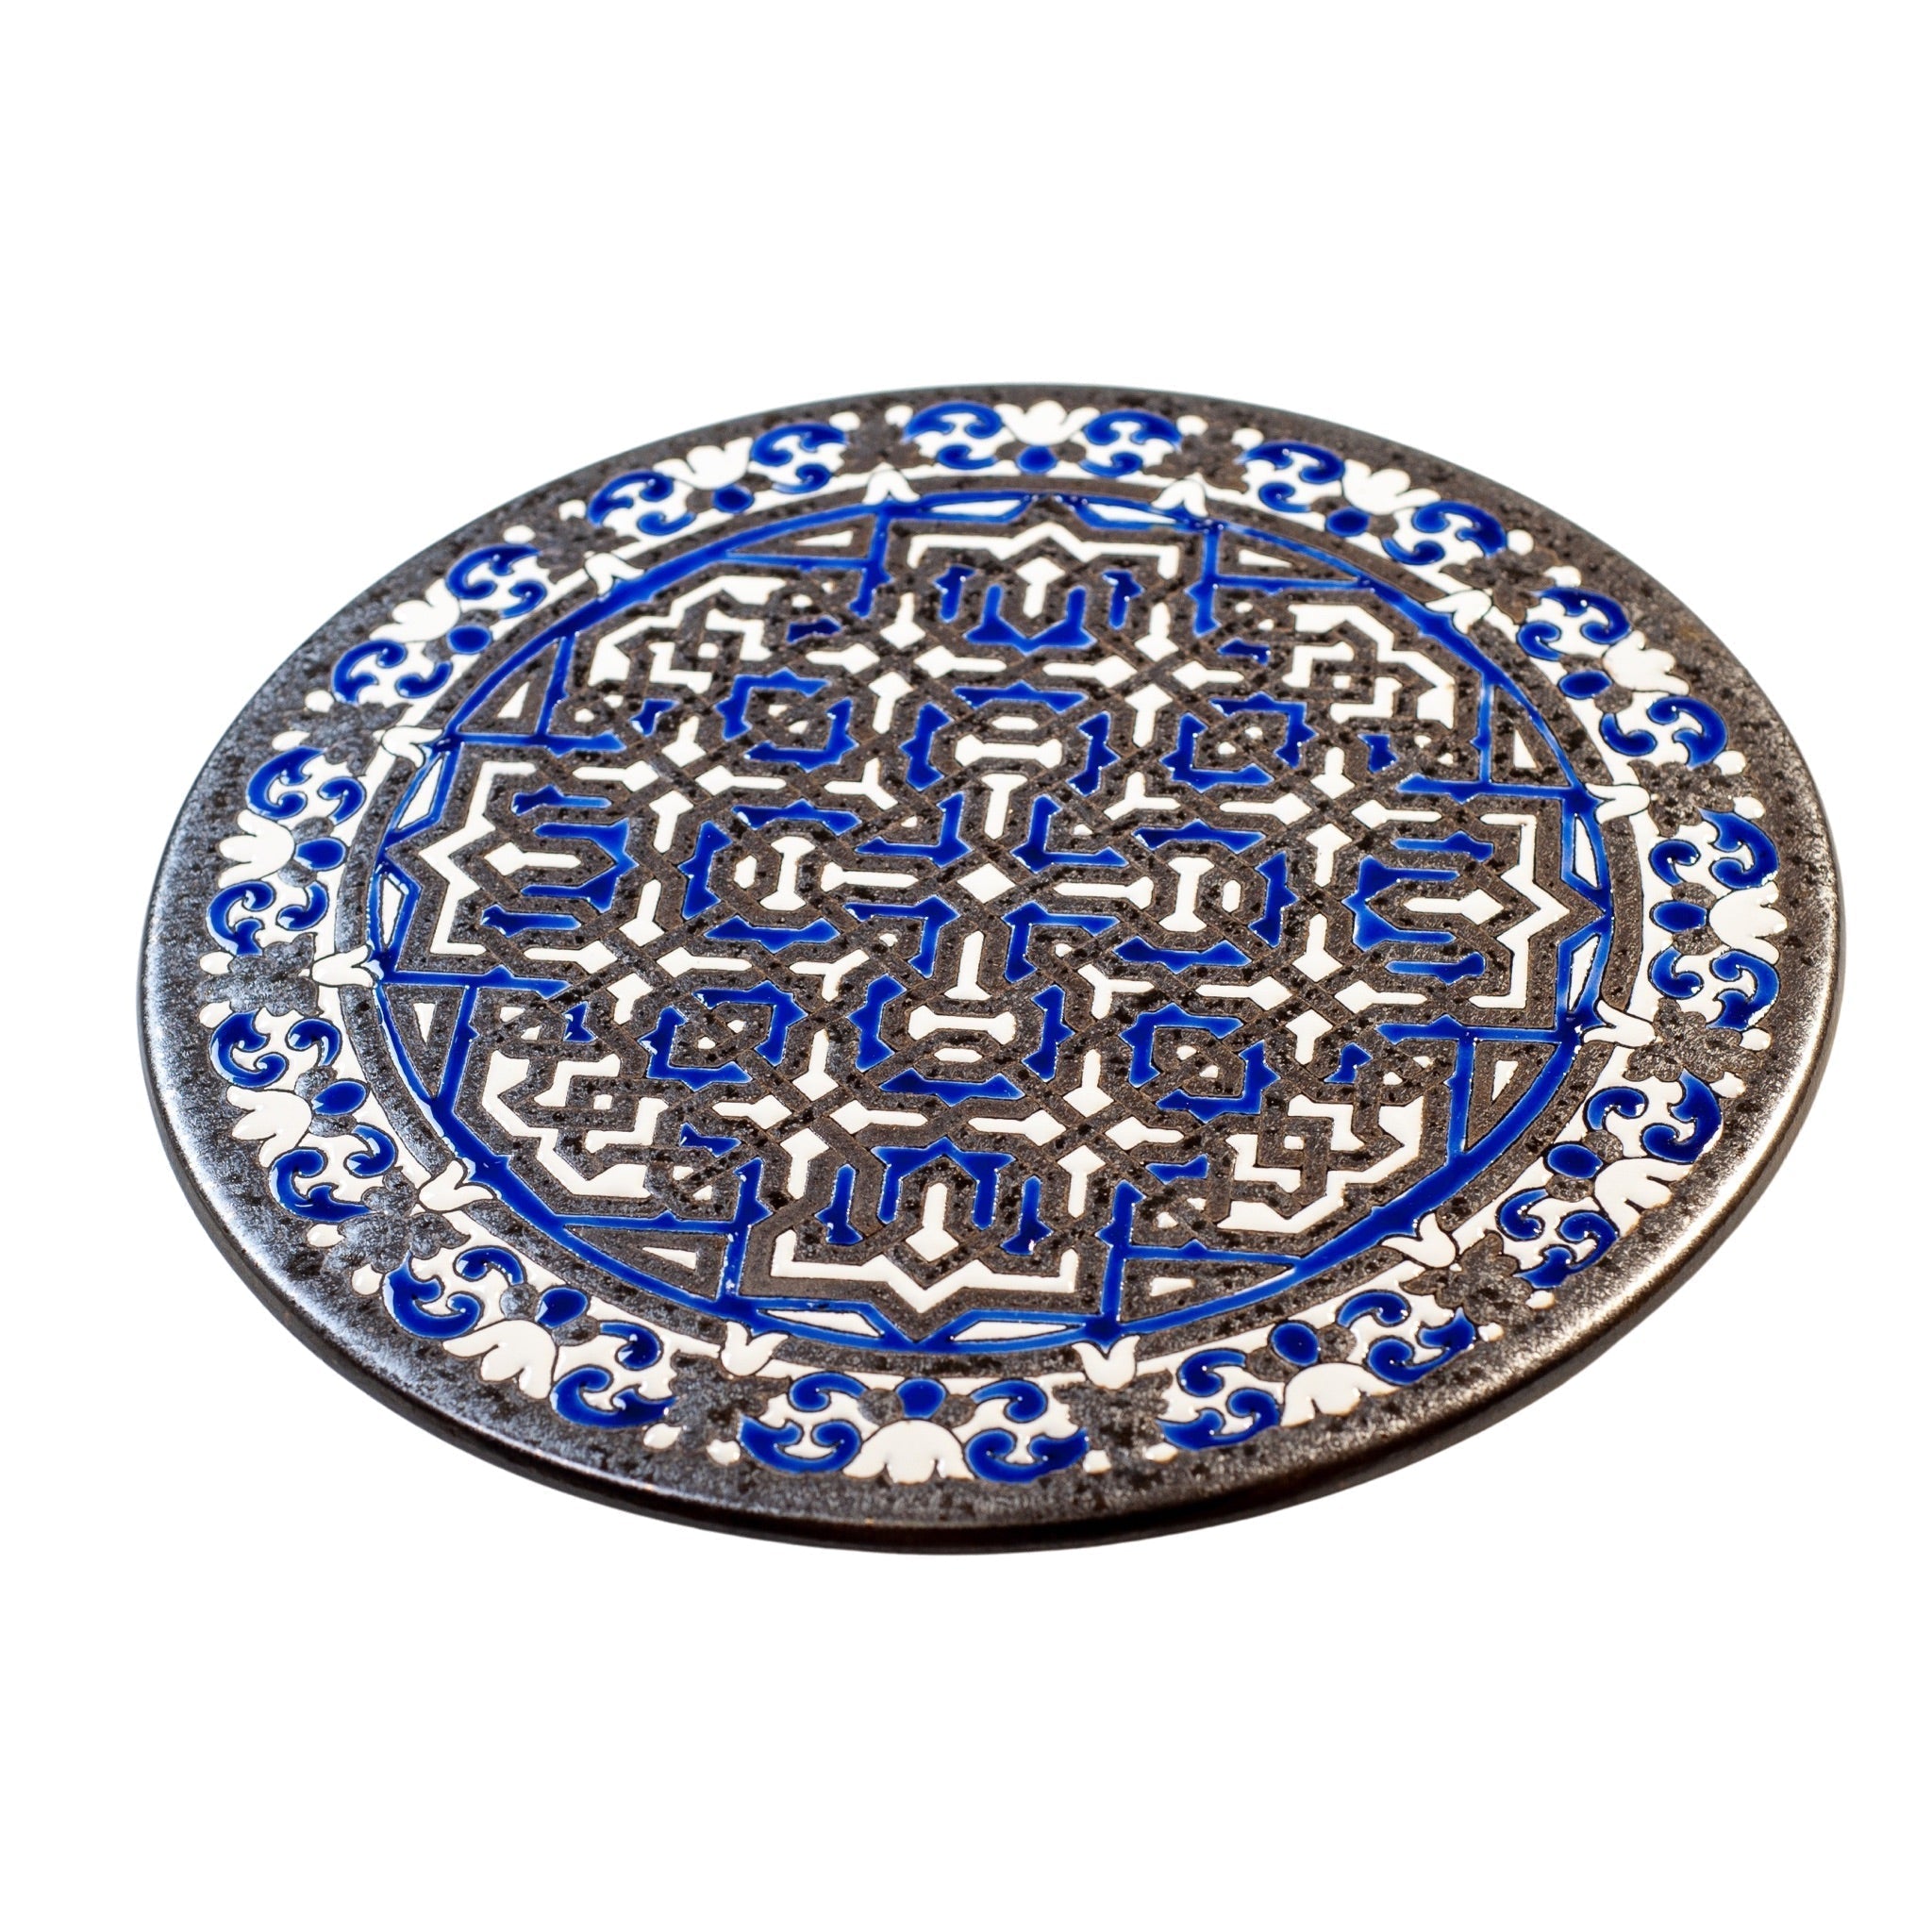 'Stort håndmalet fad med geometrisk mønster, blå' by Rune-Jakobsen Design. Explore our large selction of Keramik